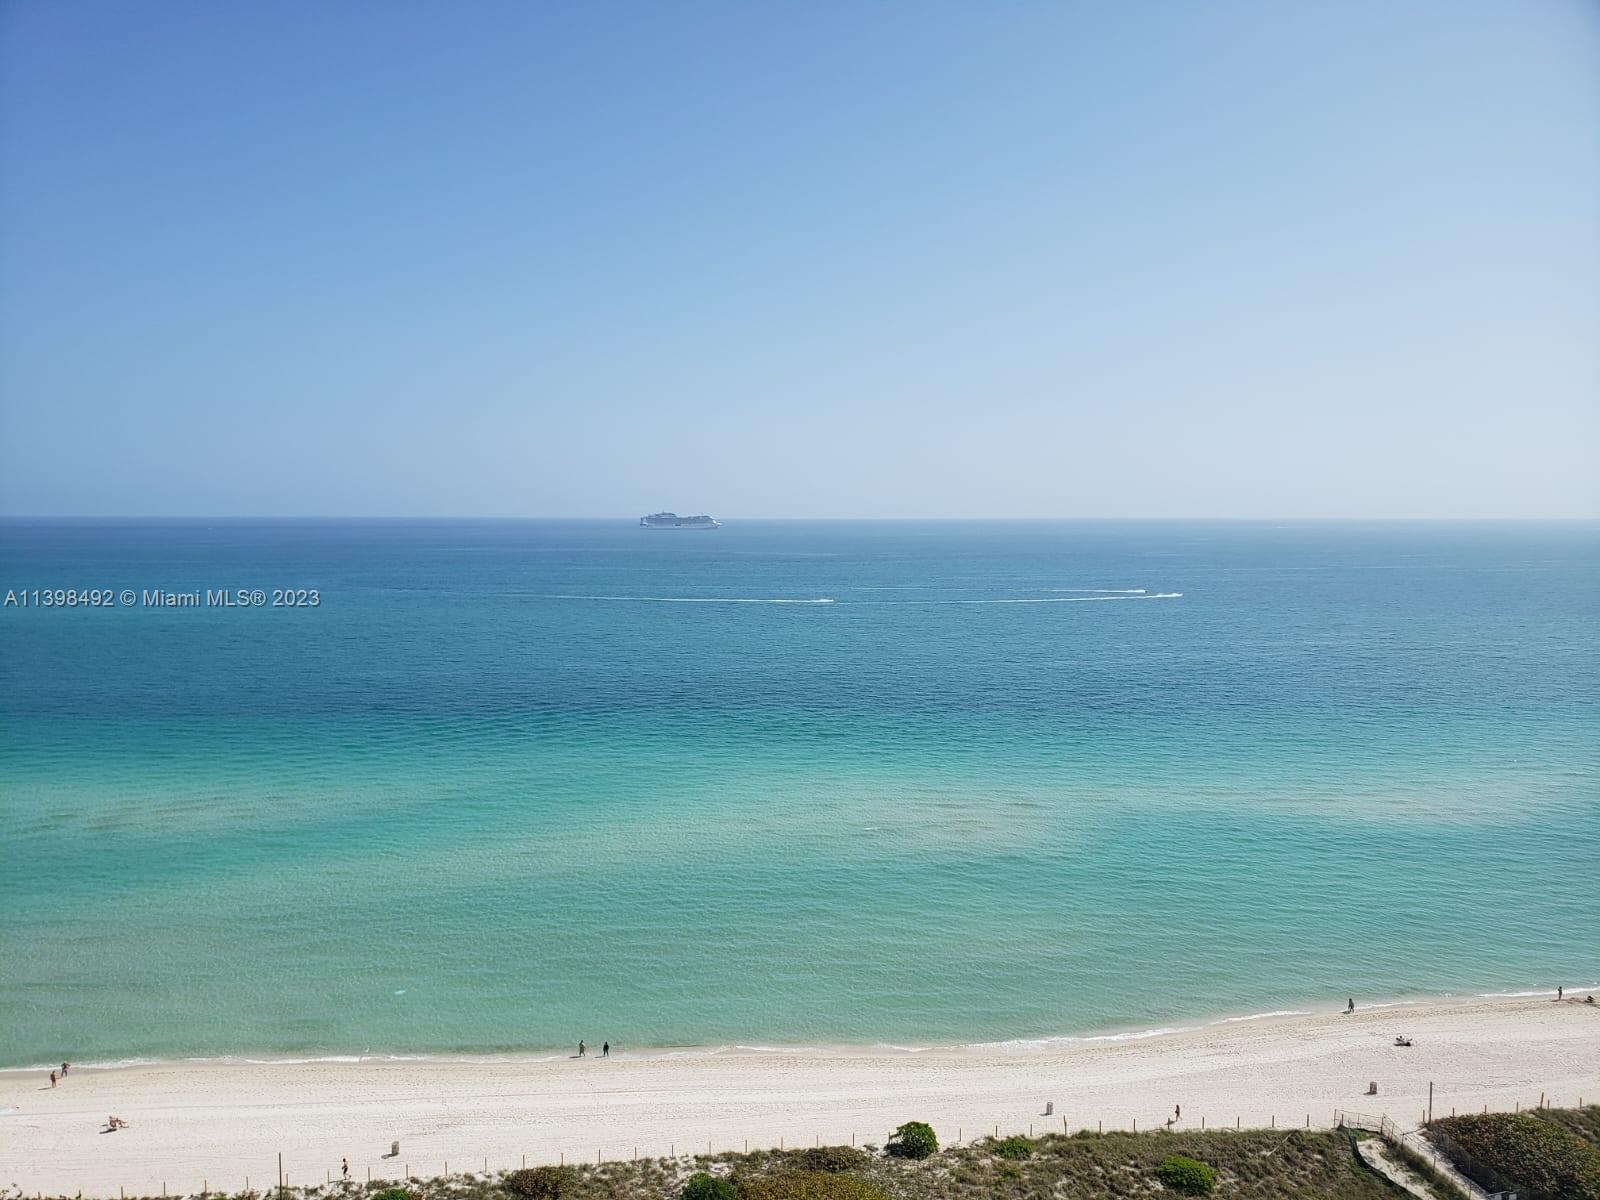 a view of an ocean beach